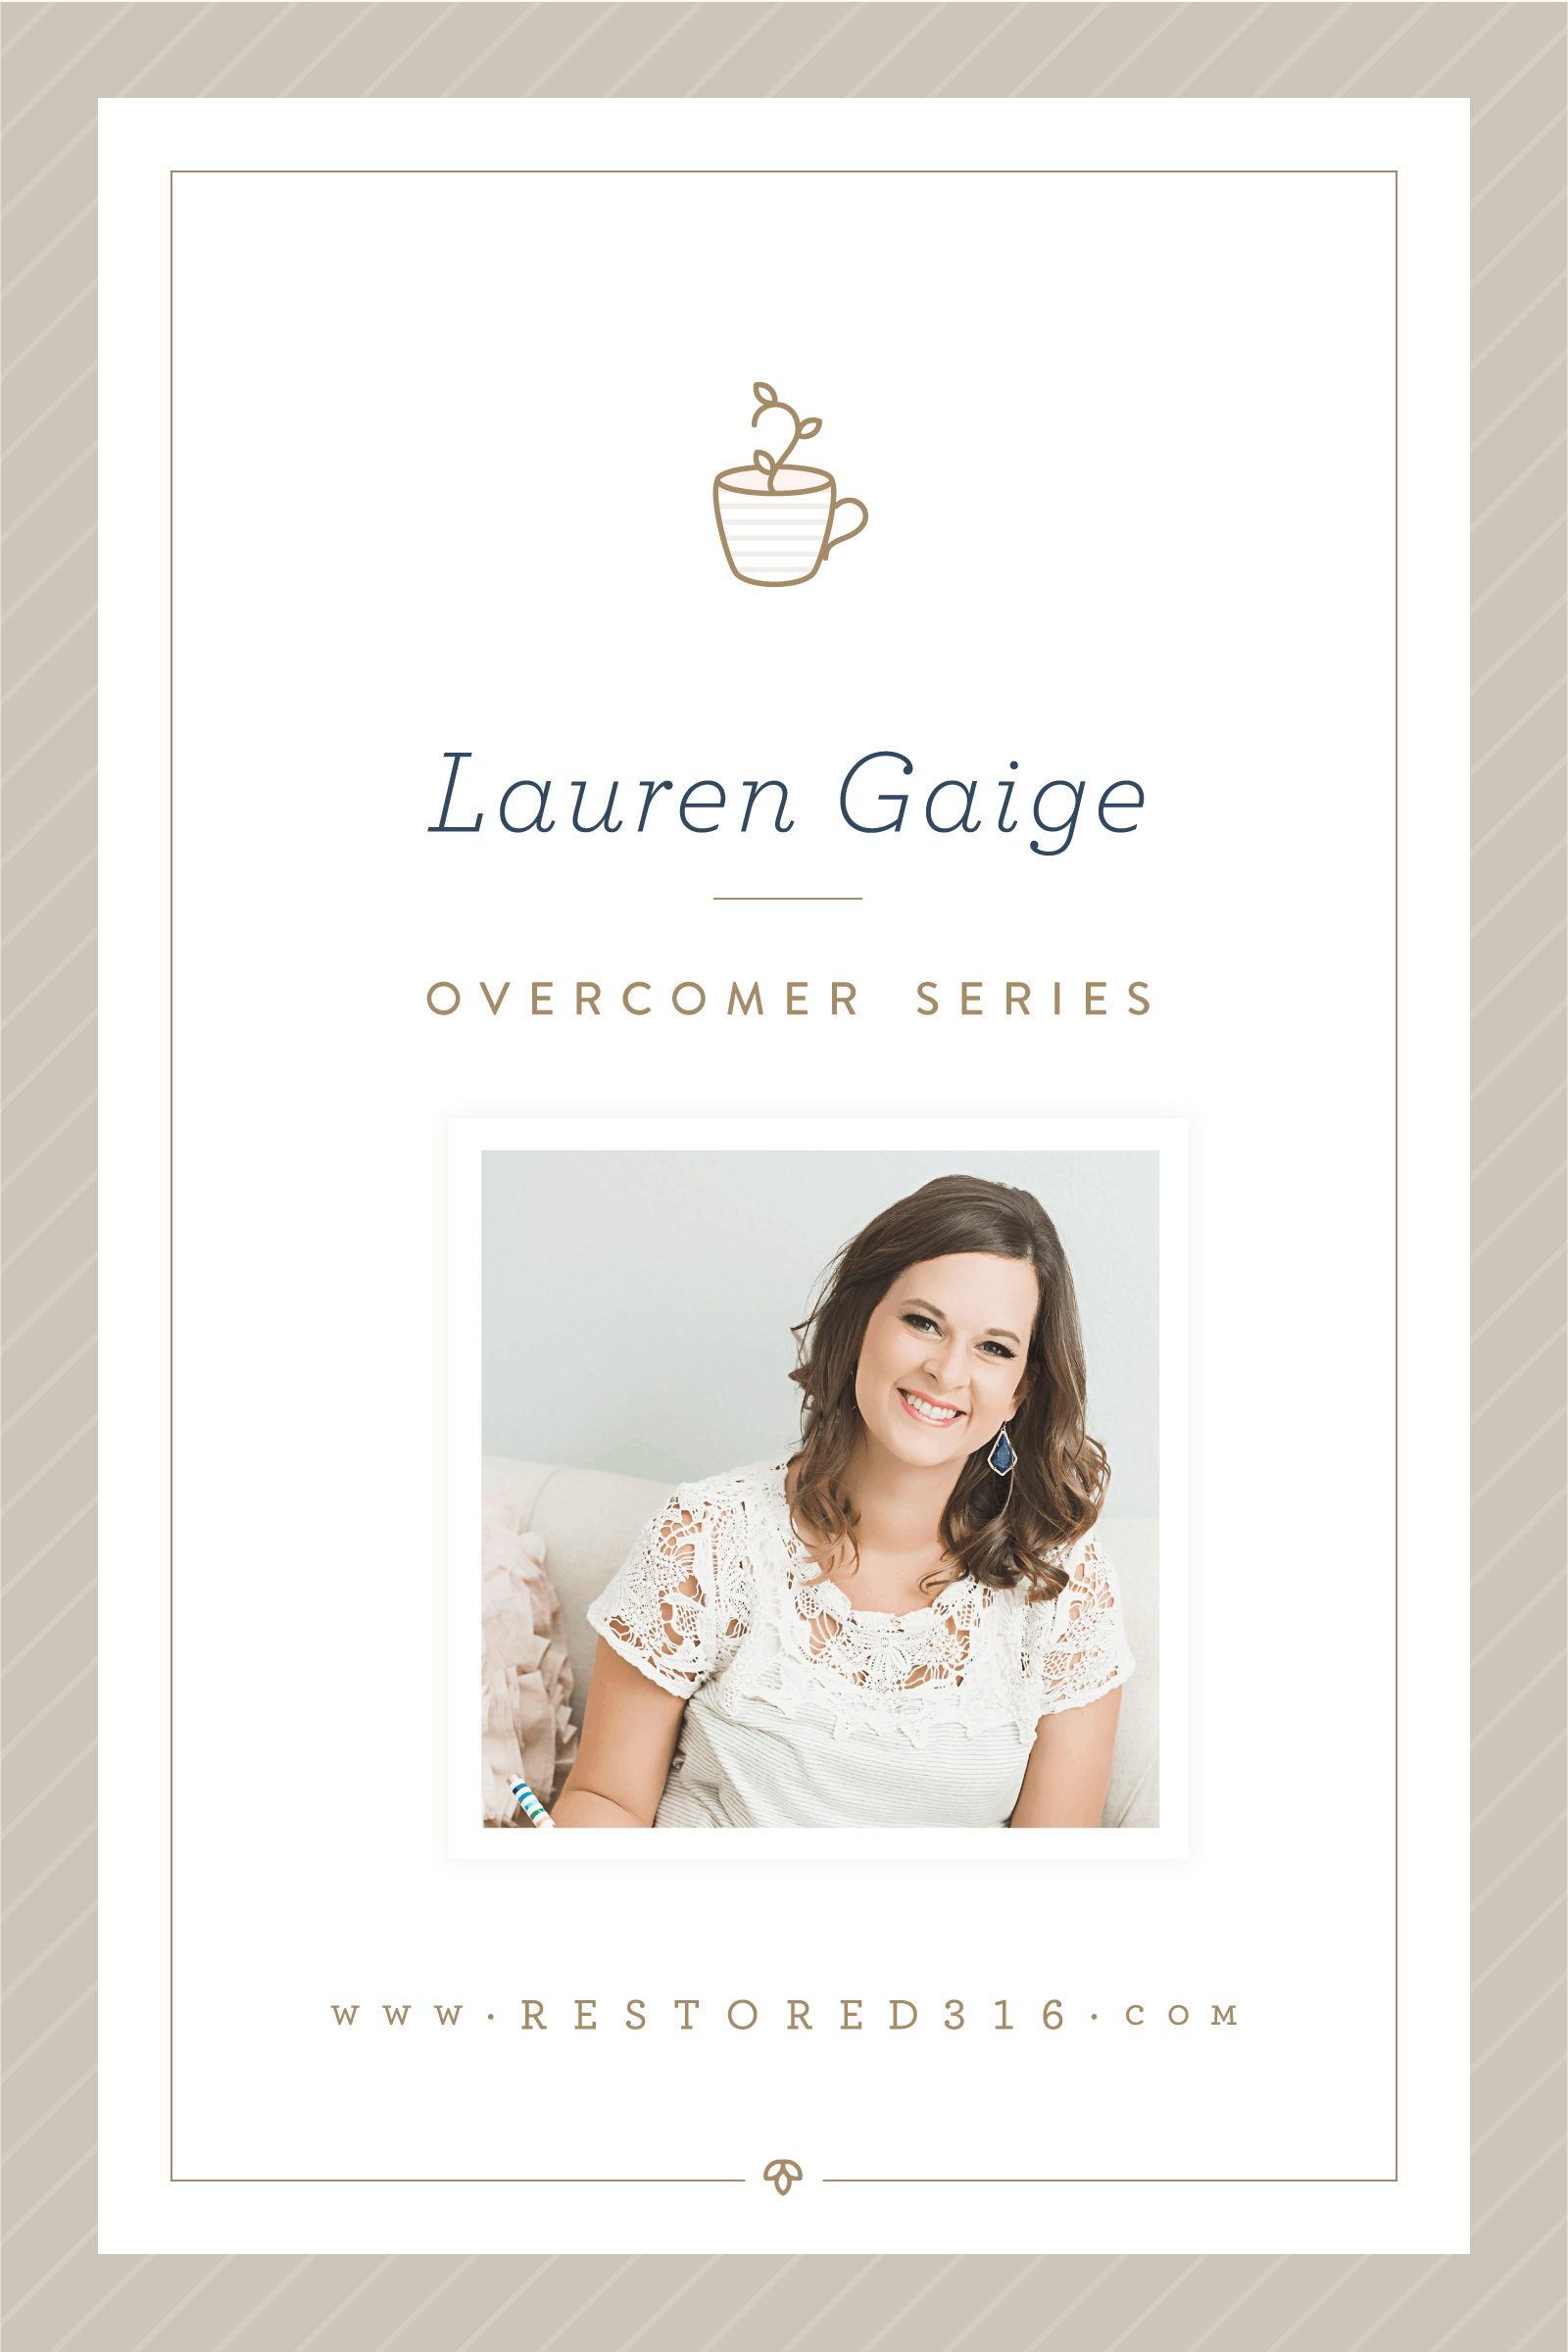 Overcomer Series with Lauren Gaige